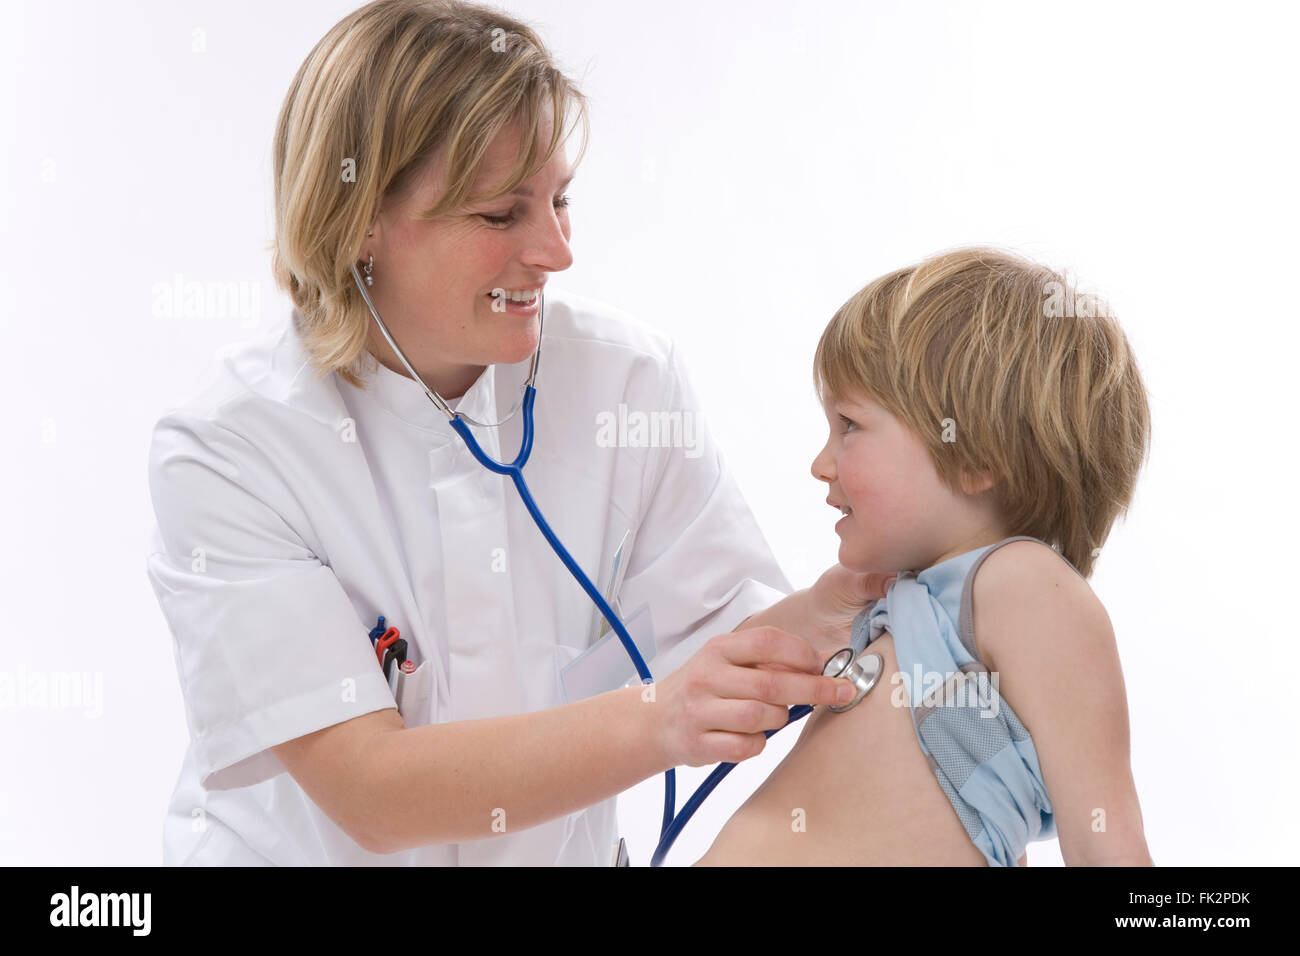 Medico donna sta ascoltando il ritmo cardiaco di un ragazzino con uno stetoscopio su sfondo bianco Foto Stock